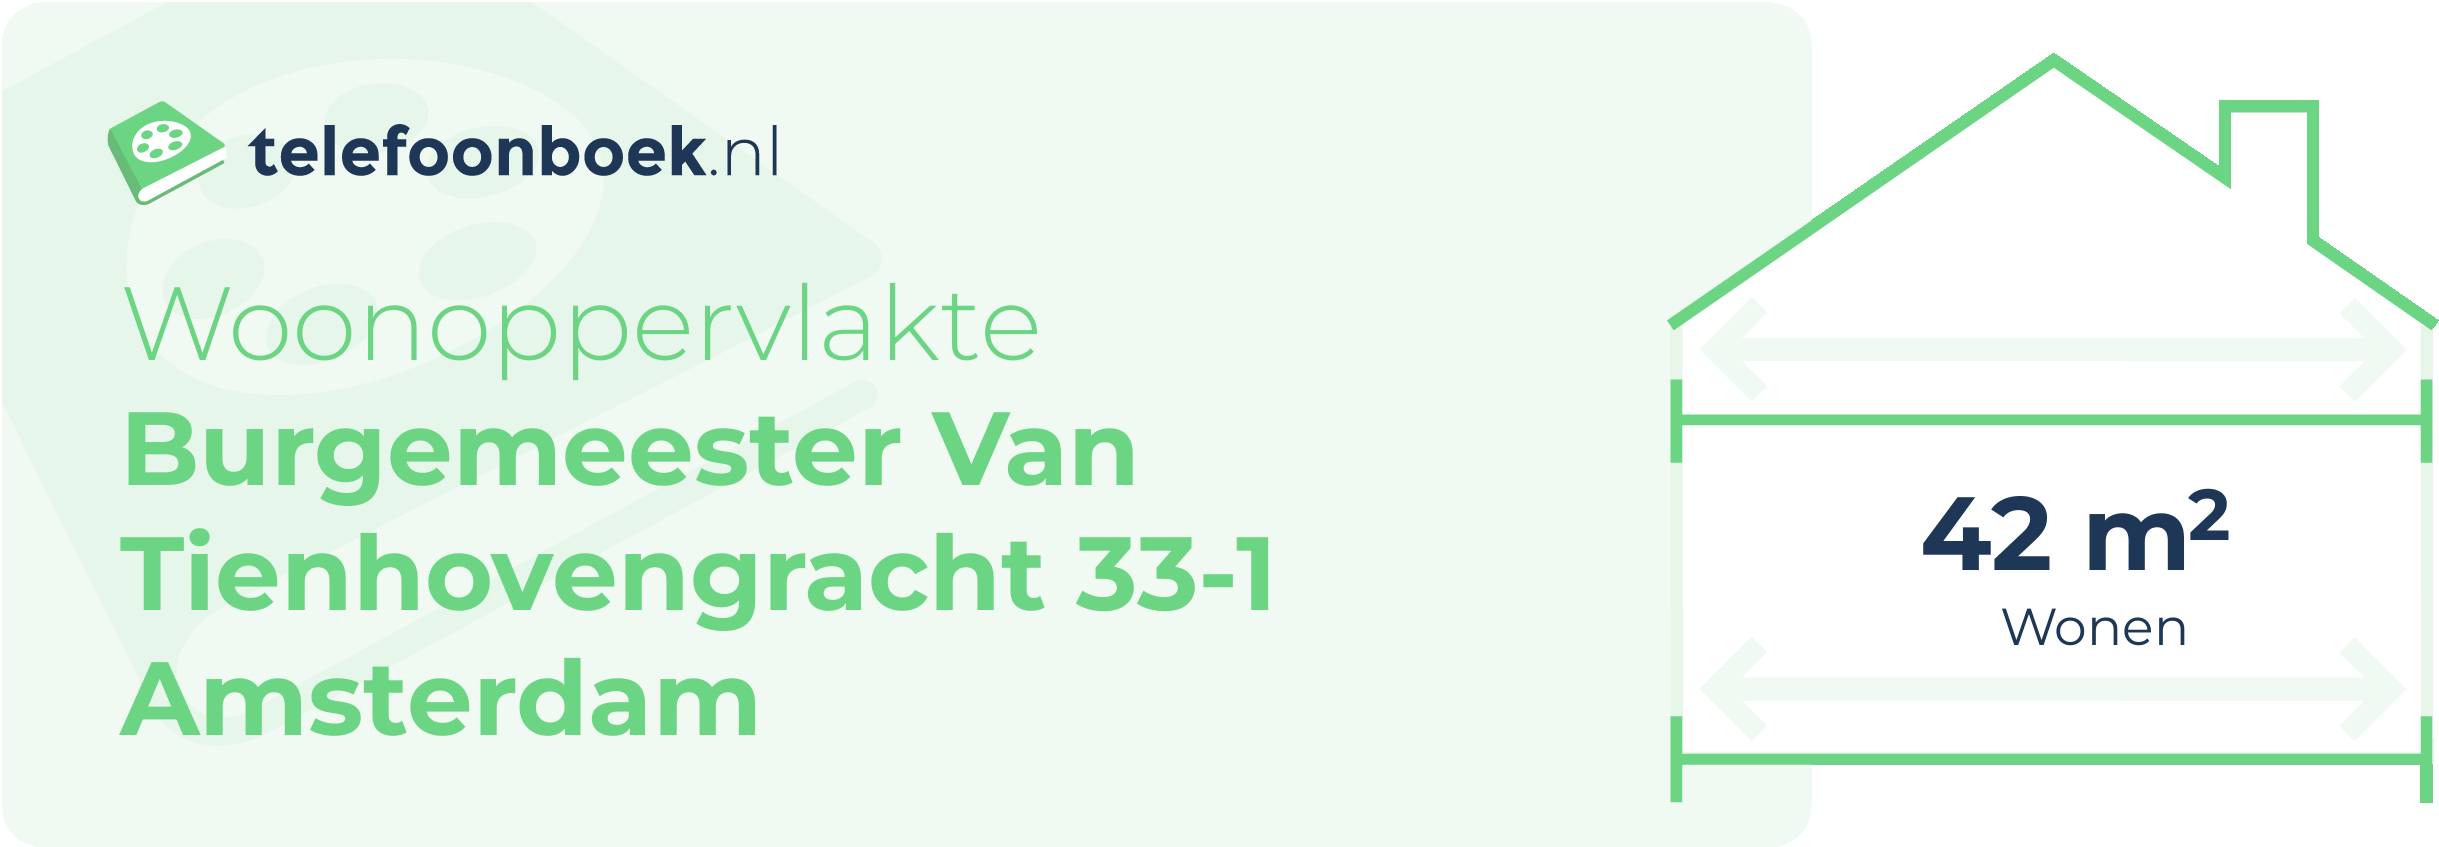 Woonoppervlakte Burgemeester Van Tienhovengracht 33-1 Amsterdam